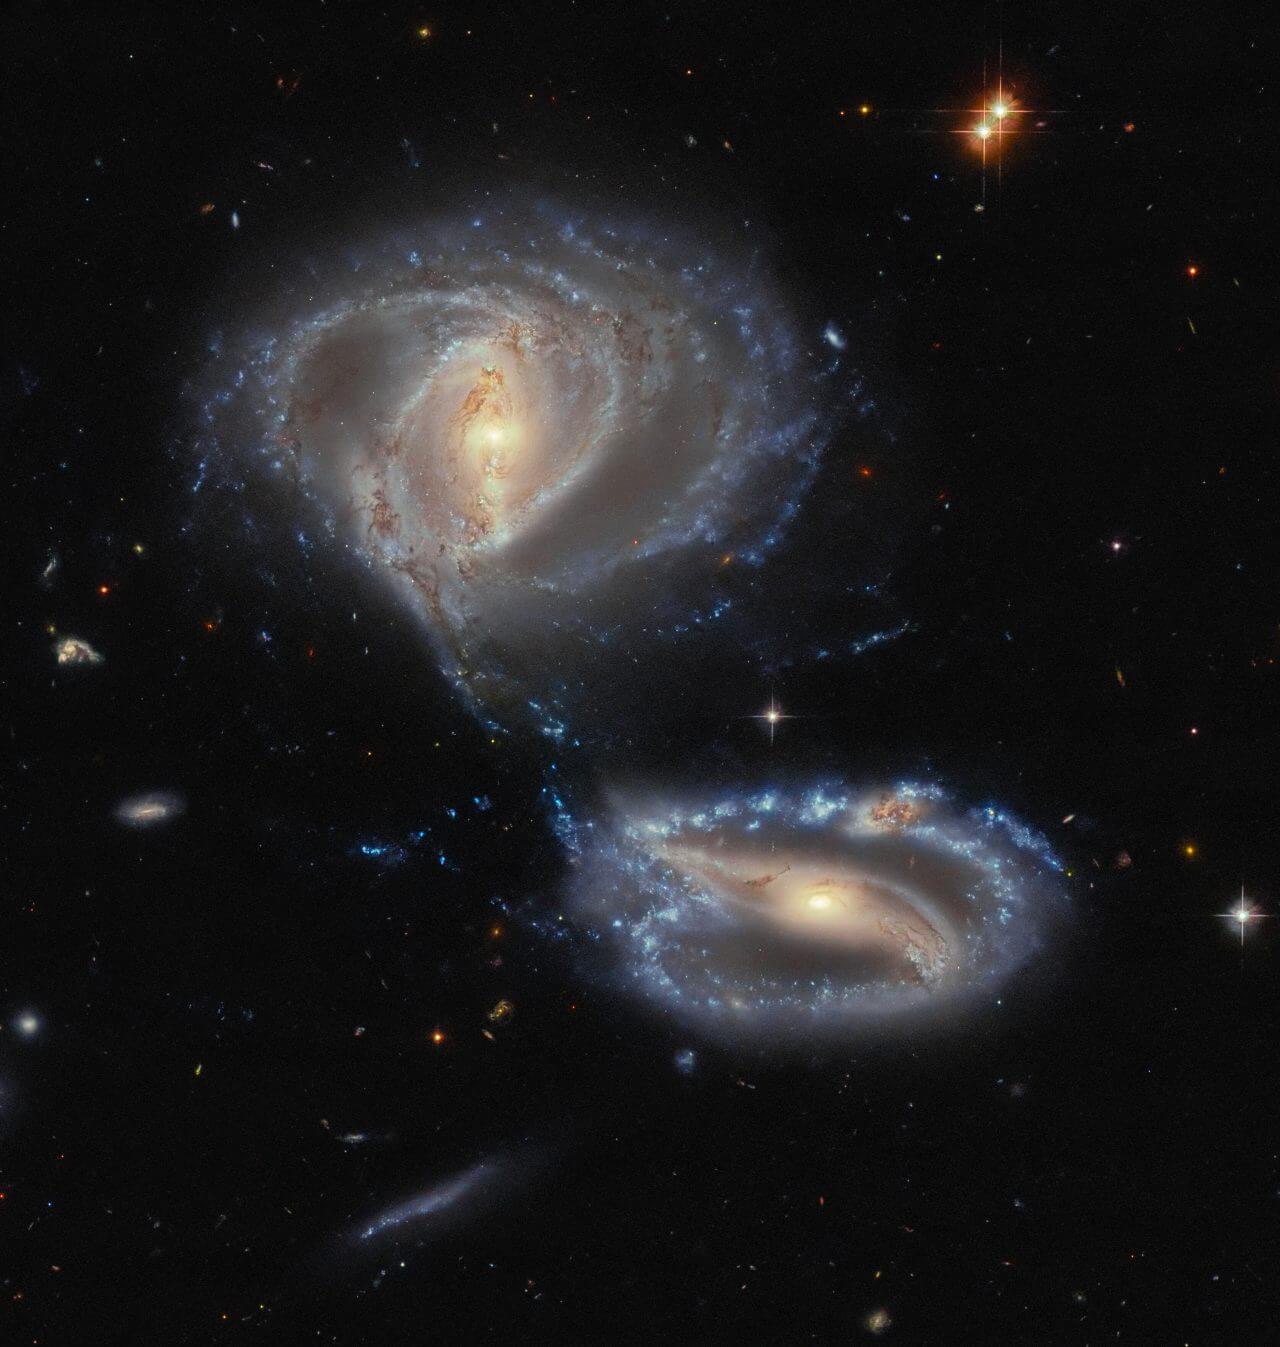 【▲ 相互作用銀河「Arp-Madore 2339-661（AM 2339-661）」。銀河の名前は左上が「NGC 7734」、右下が「NGC 7733」（Credit: ESA/Hubble & NASA, J. Dalcanton, Dark Energy Survey/DOE/FNAL/NOIRLab/NSF/AURA, Acknowledgement: L. Shatz）】